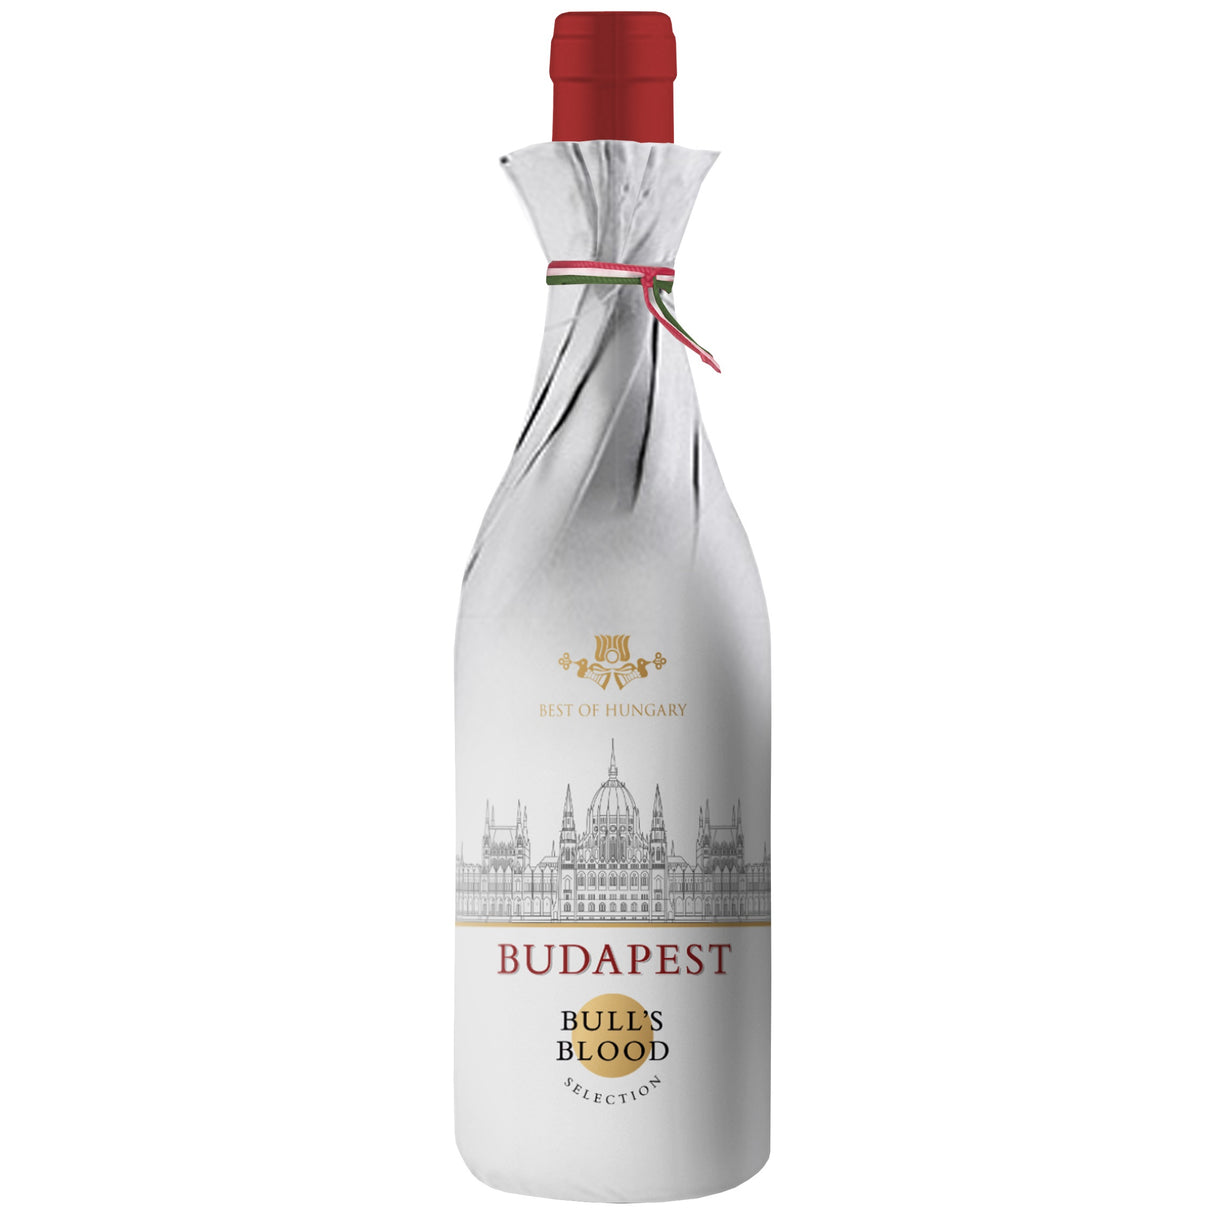 BEST OF HUNGARY Bull's Blood 'Budapest' 2020